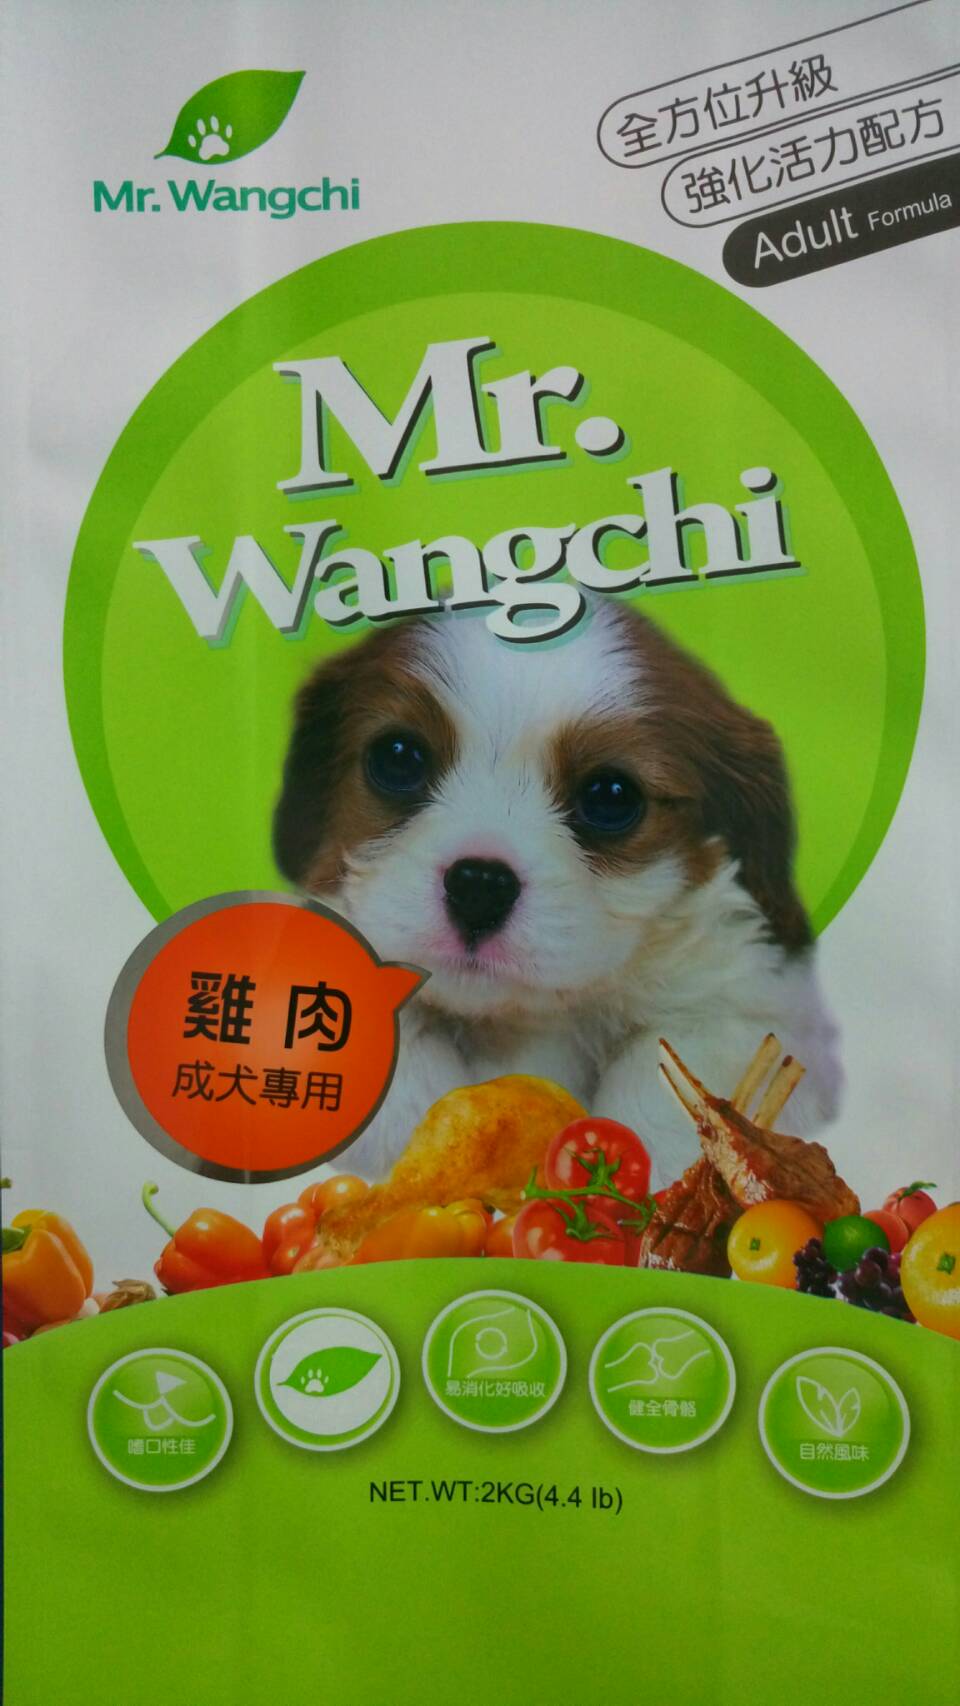 旺奇先生:雞肉成犬專用
Mr.Wangchi